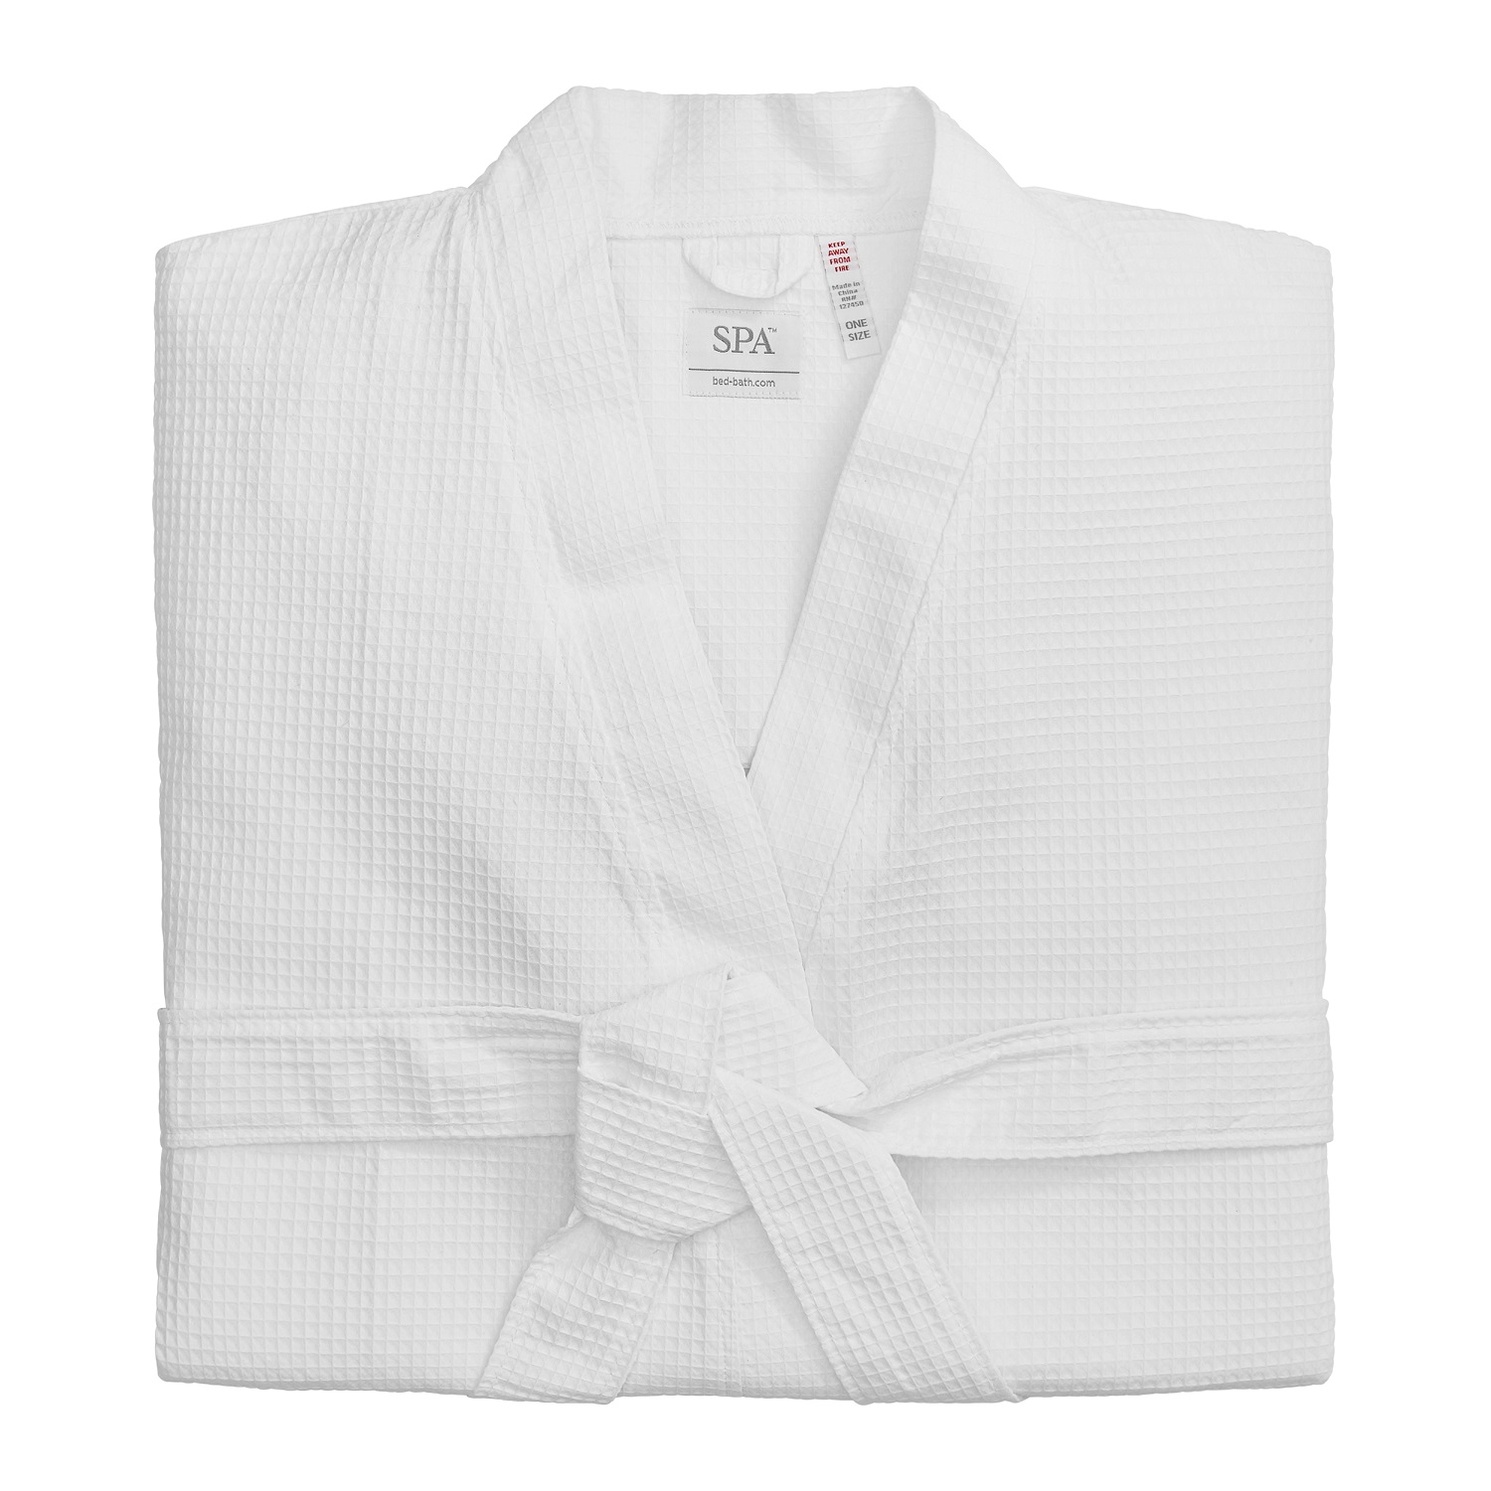 SPA waffel bathrobe kimono  220 g, White